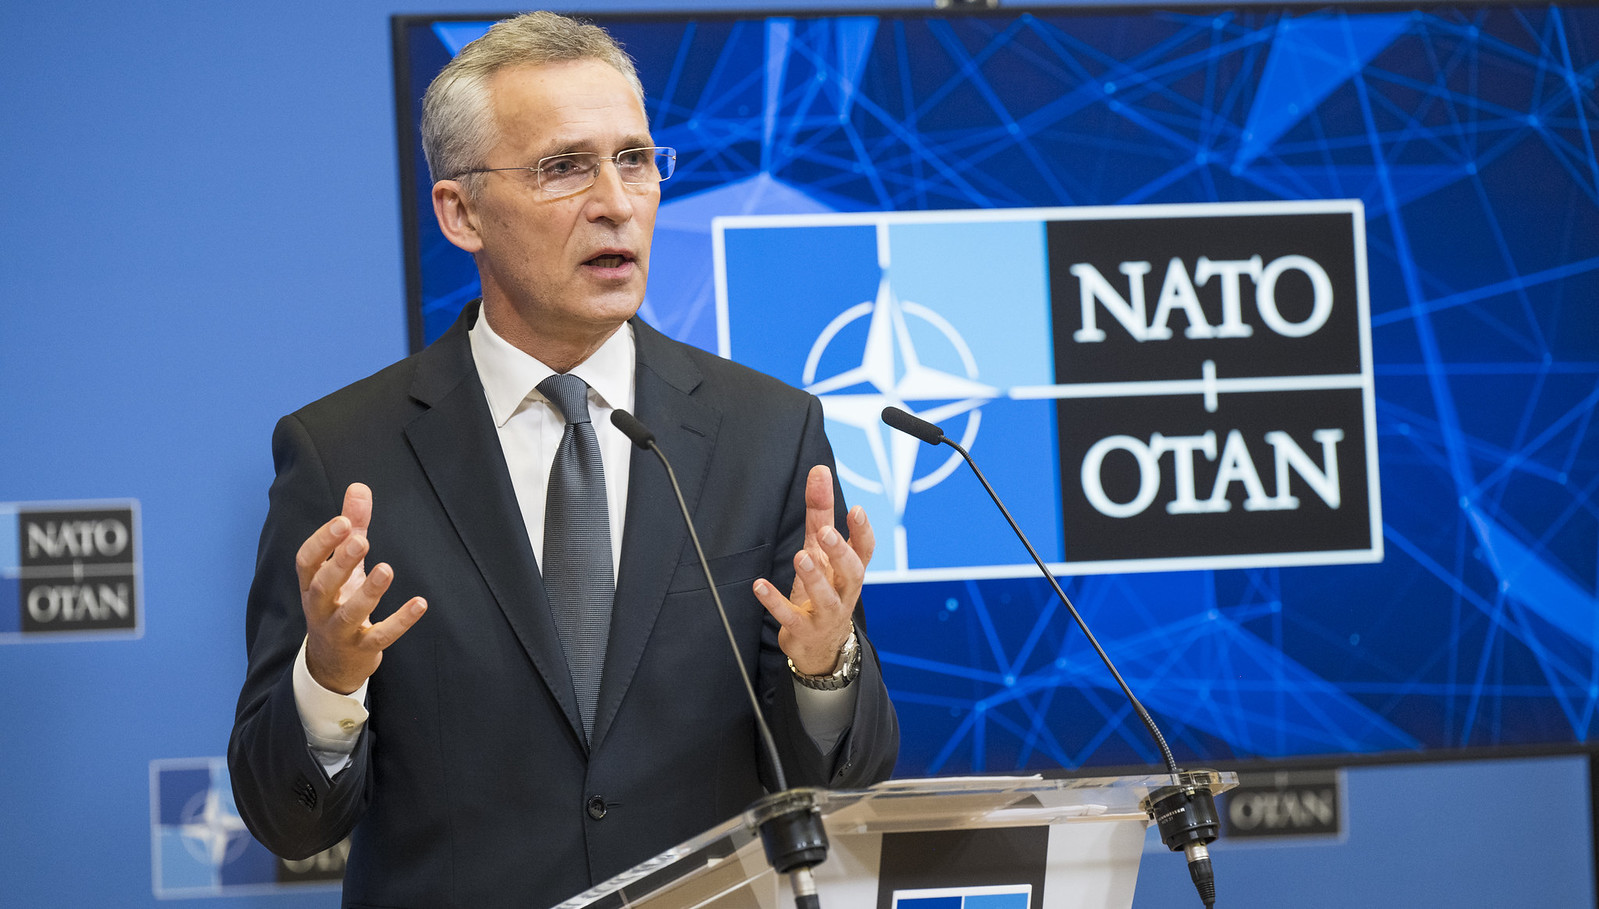 NATO ia vazhdon mandatin Stoltenbergut edhe për një vit